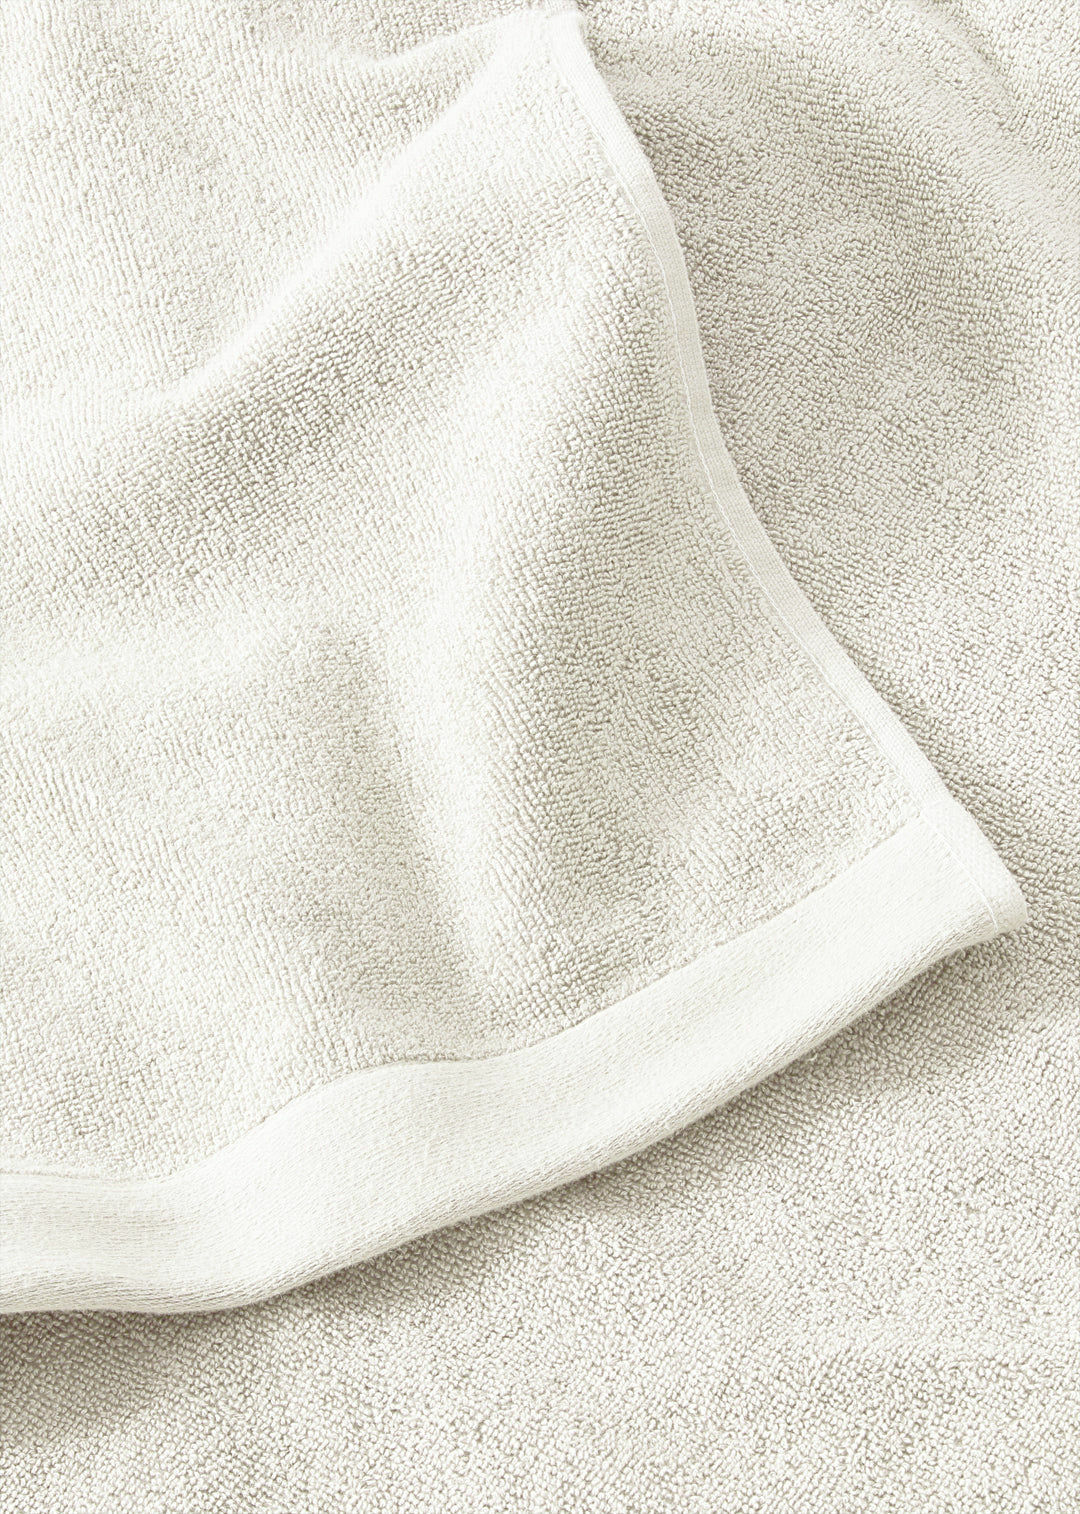 Handtuch Baumwolle Weiß 30 x 50 cm 2